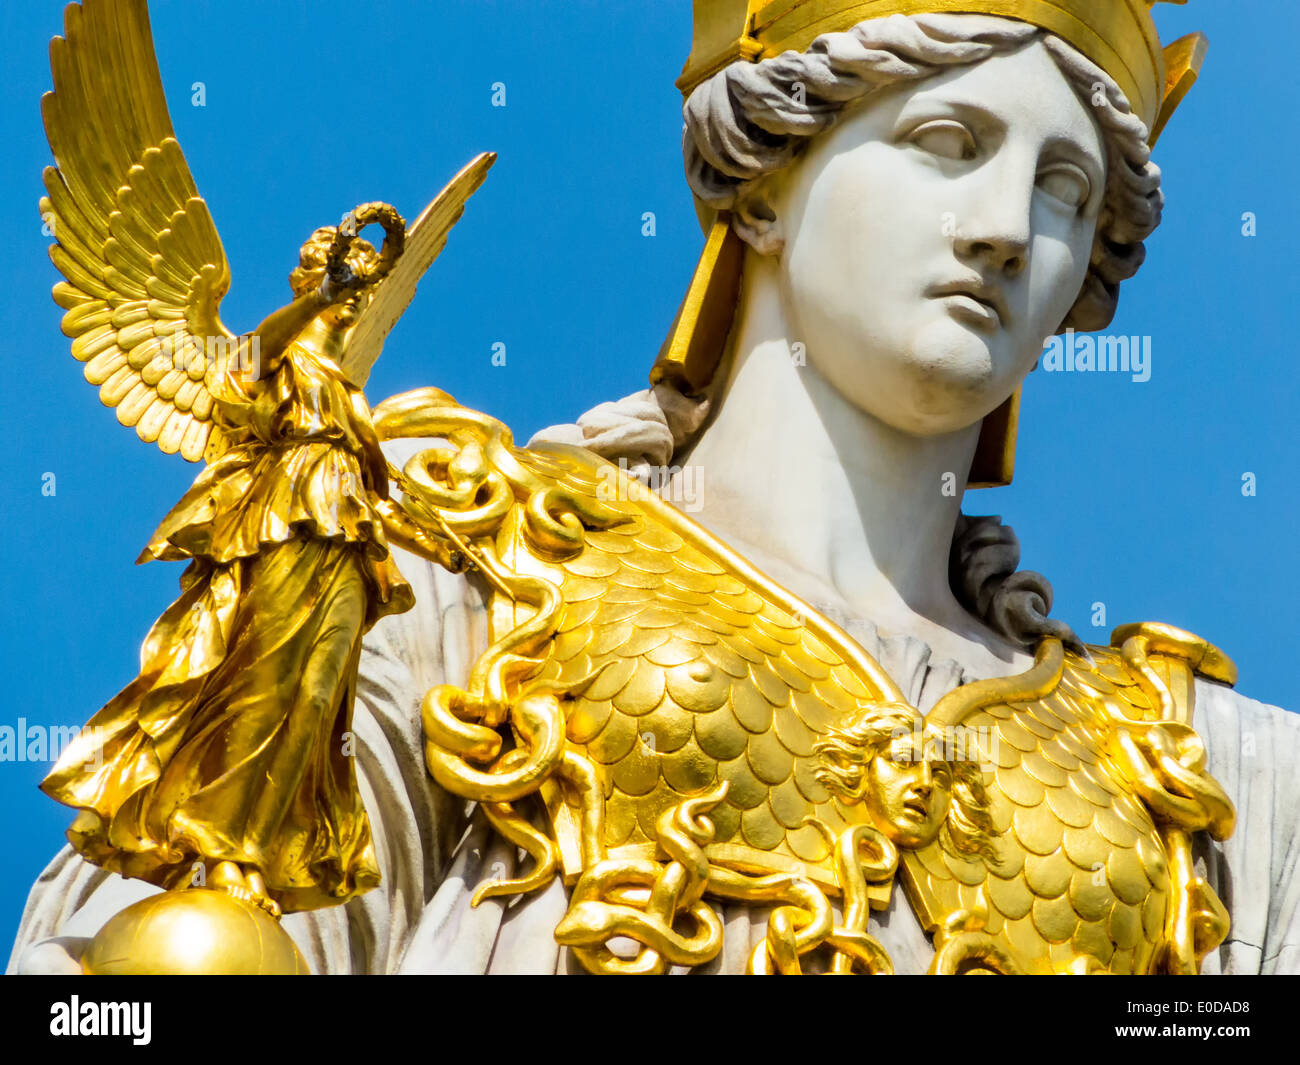 'El parlamento en Viena, ? Sterreich. Con la estatua de ''Pallas Athene'' de la diosa griega de la sabiduría.', 'Dcomo Parlament i Foto de stock